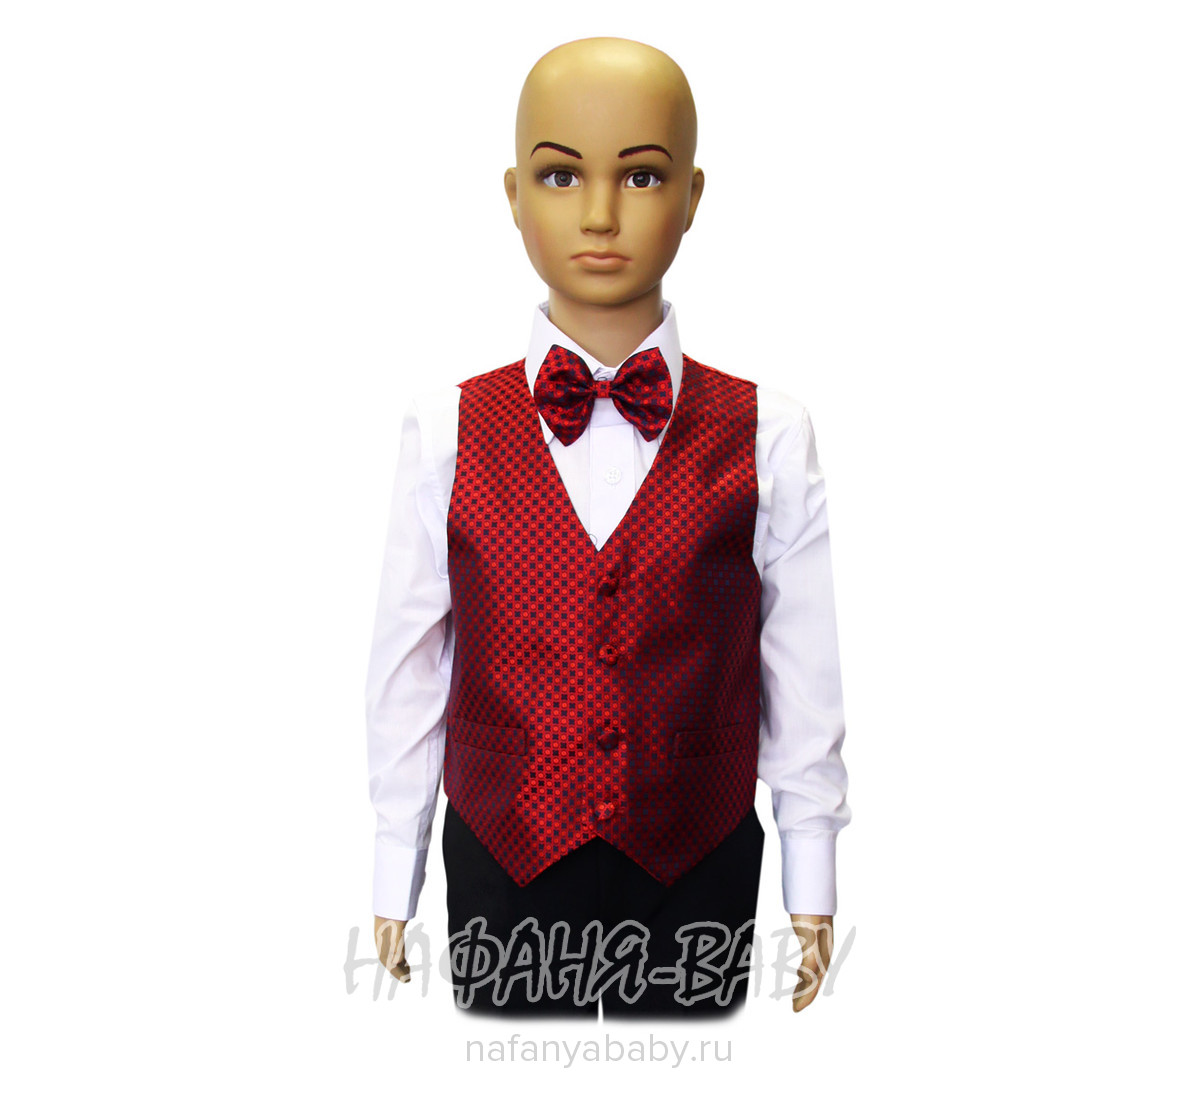 Детский костюм-тройка (жилет+рубашка+бабочка+брюки) YOUNG DANDY, купить в интернет магазине Нафаня. арт: 265.